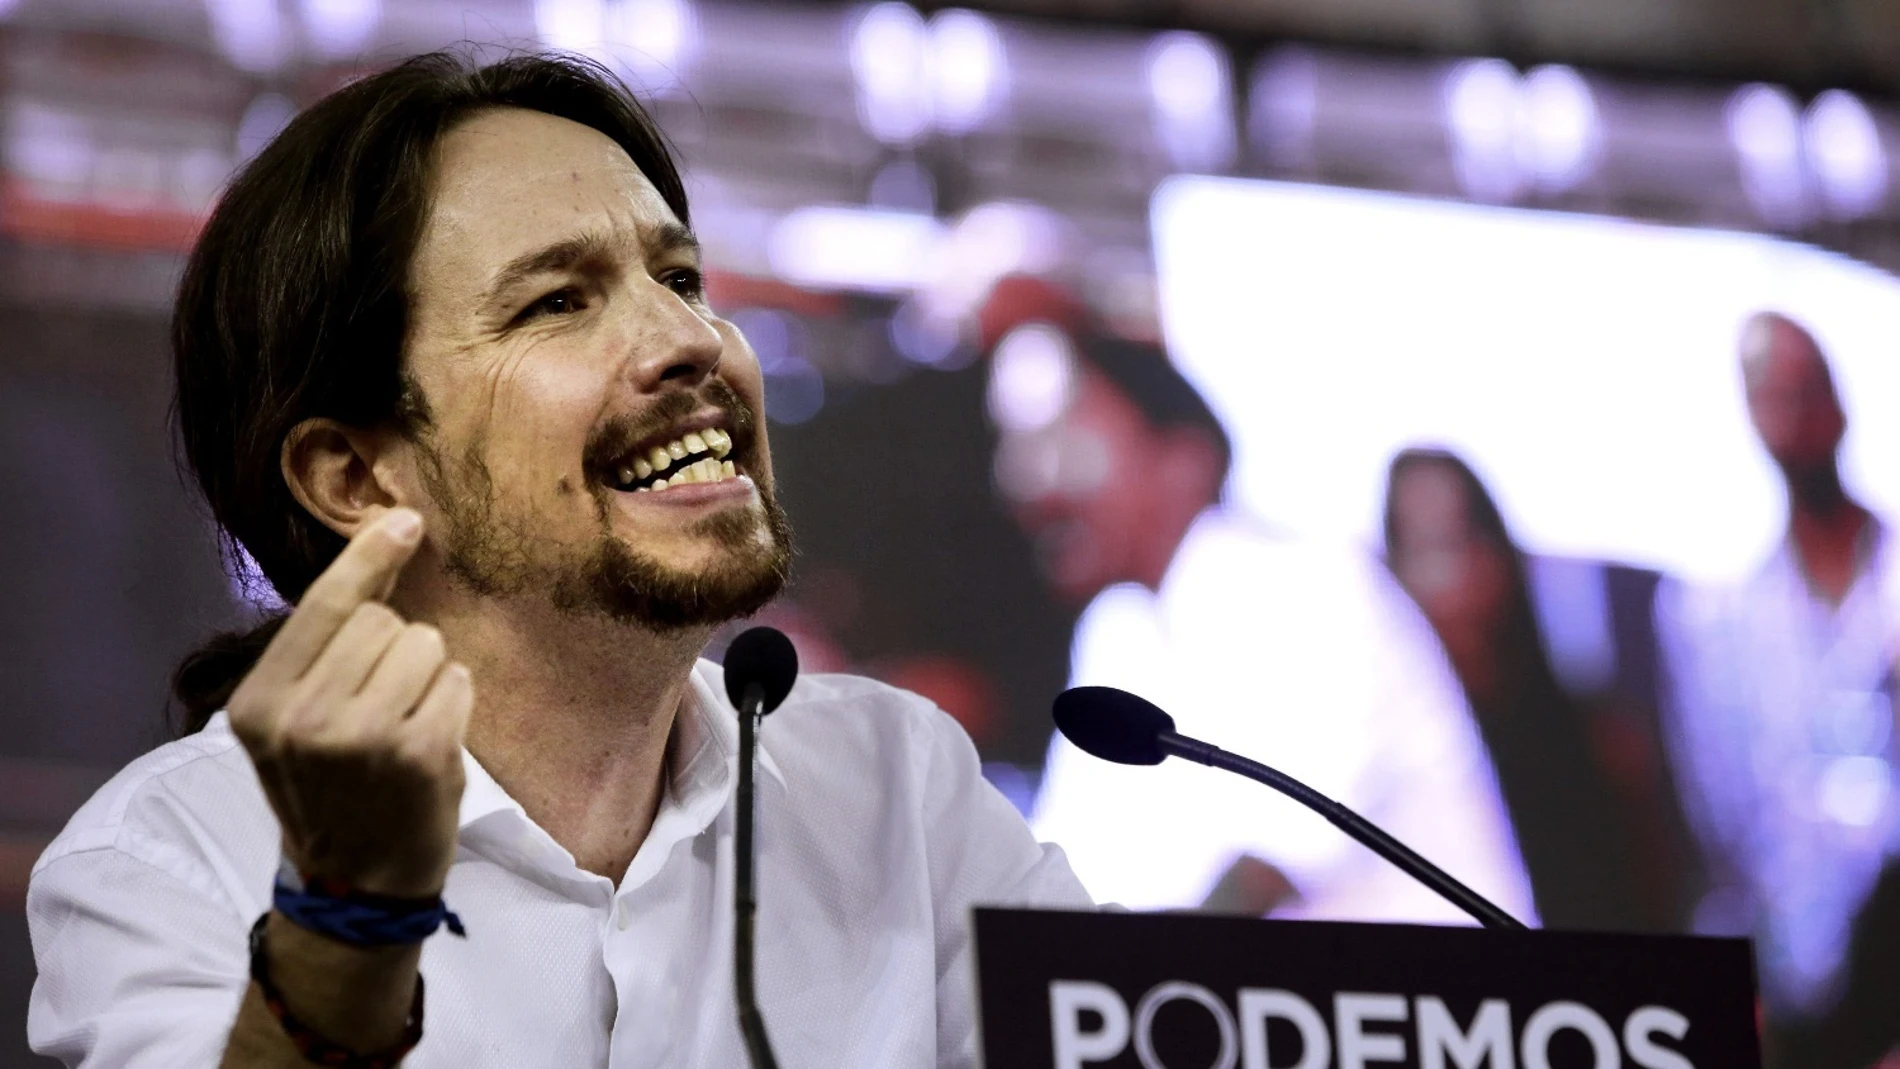 El secretario general de Podemos, Pablo Iglesias, en una imagen de archivo / Efe